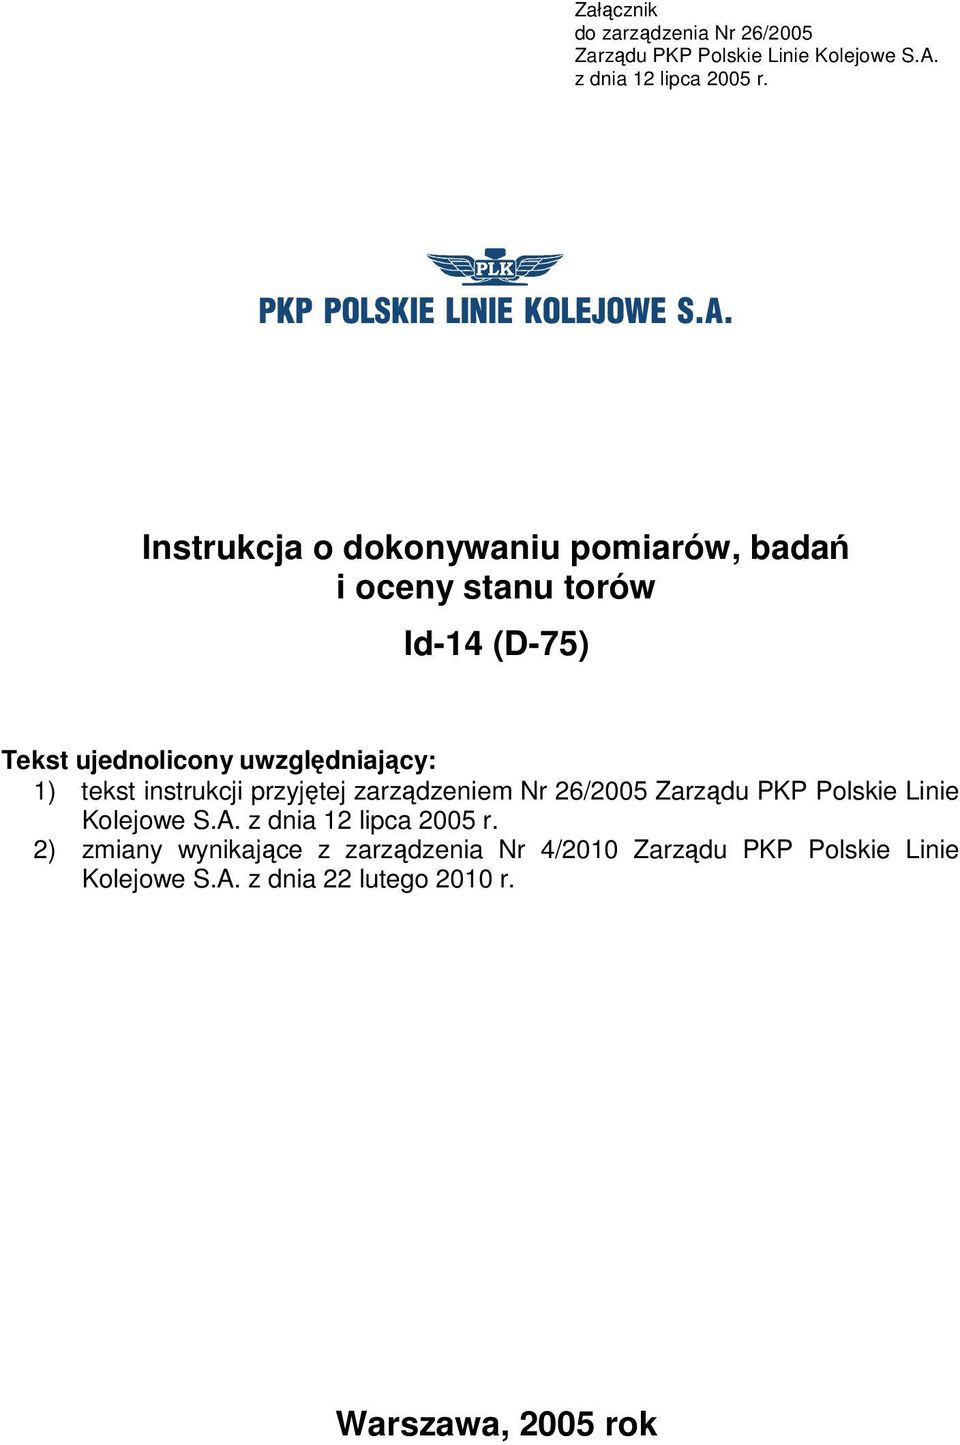 tekst instrukcji przyjętej zarządzeniem Nr 26/2005 Zarządu PKP Polskie Linie Kolejowe S.A. z dnia 12 lipca 2005 r.